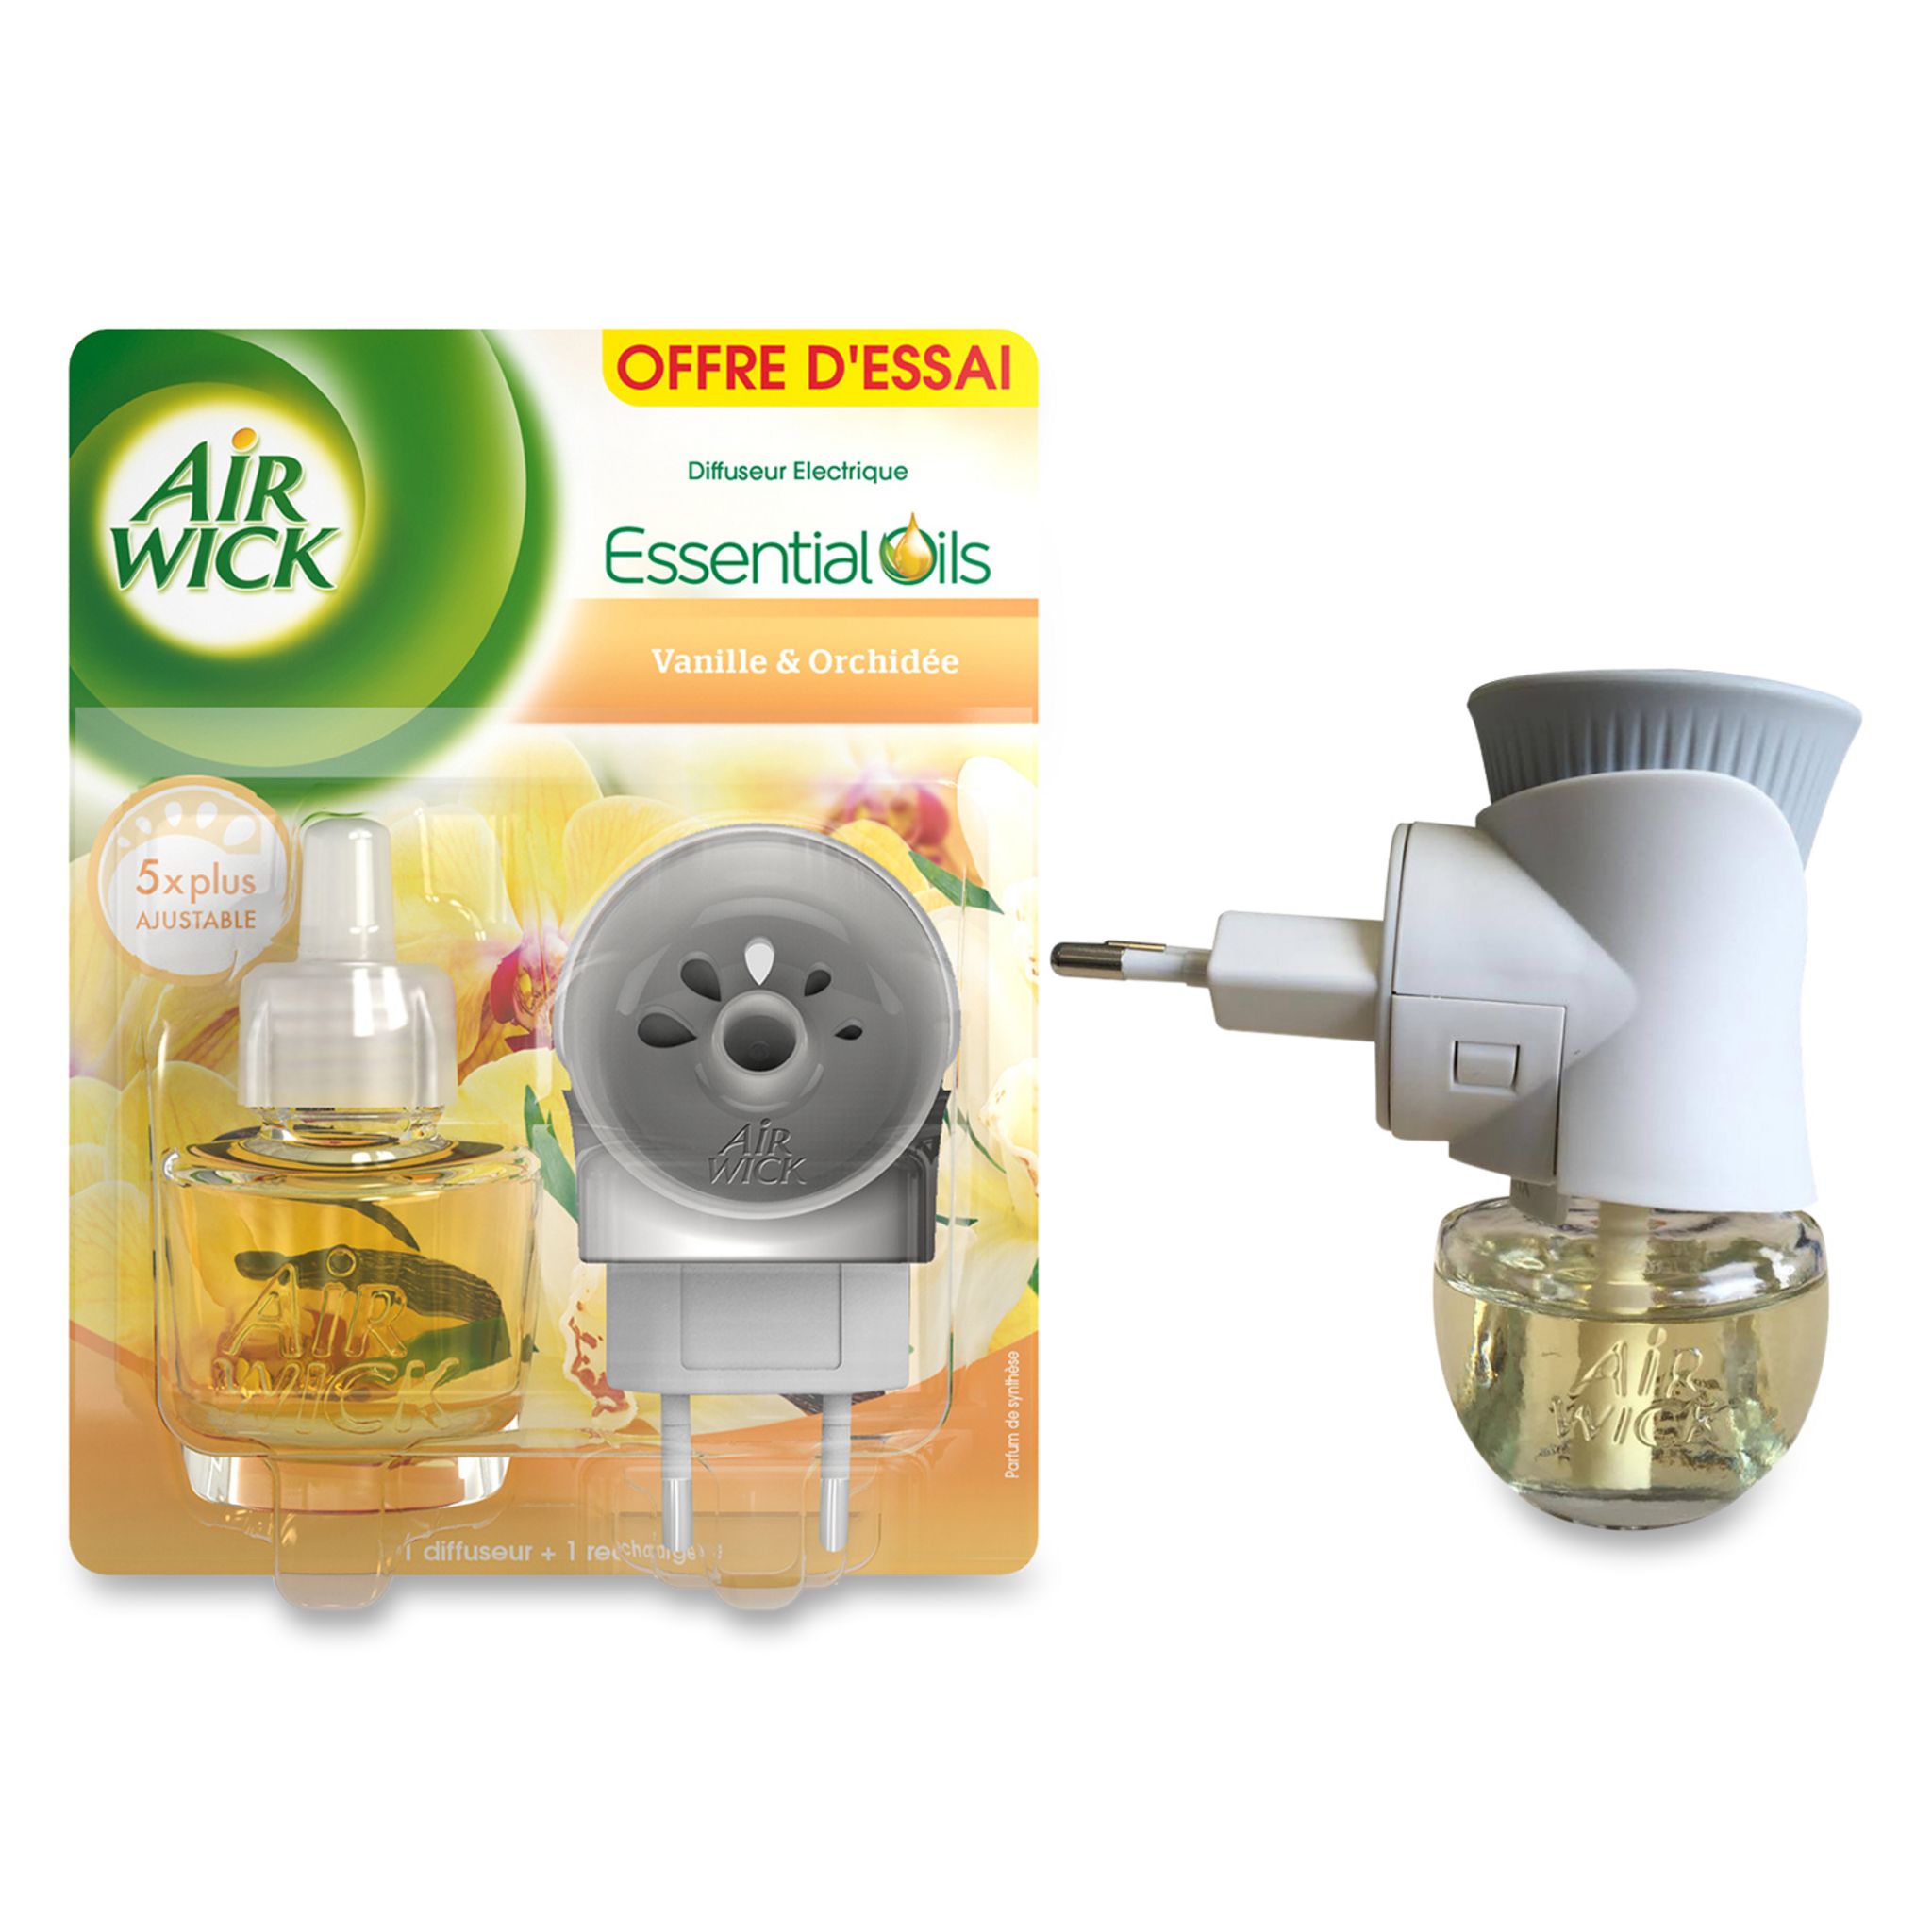 AIR WICK Essential Oils diffuseur electrique vanille orchidée 19ml pas cher  